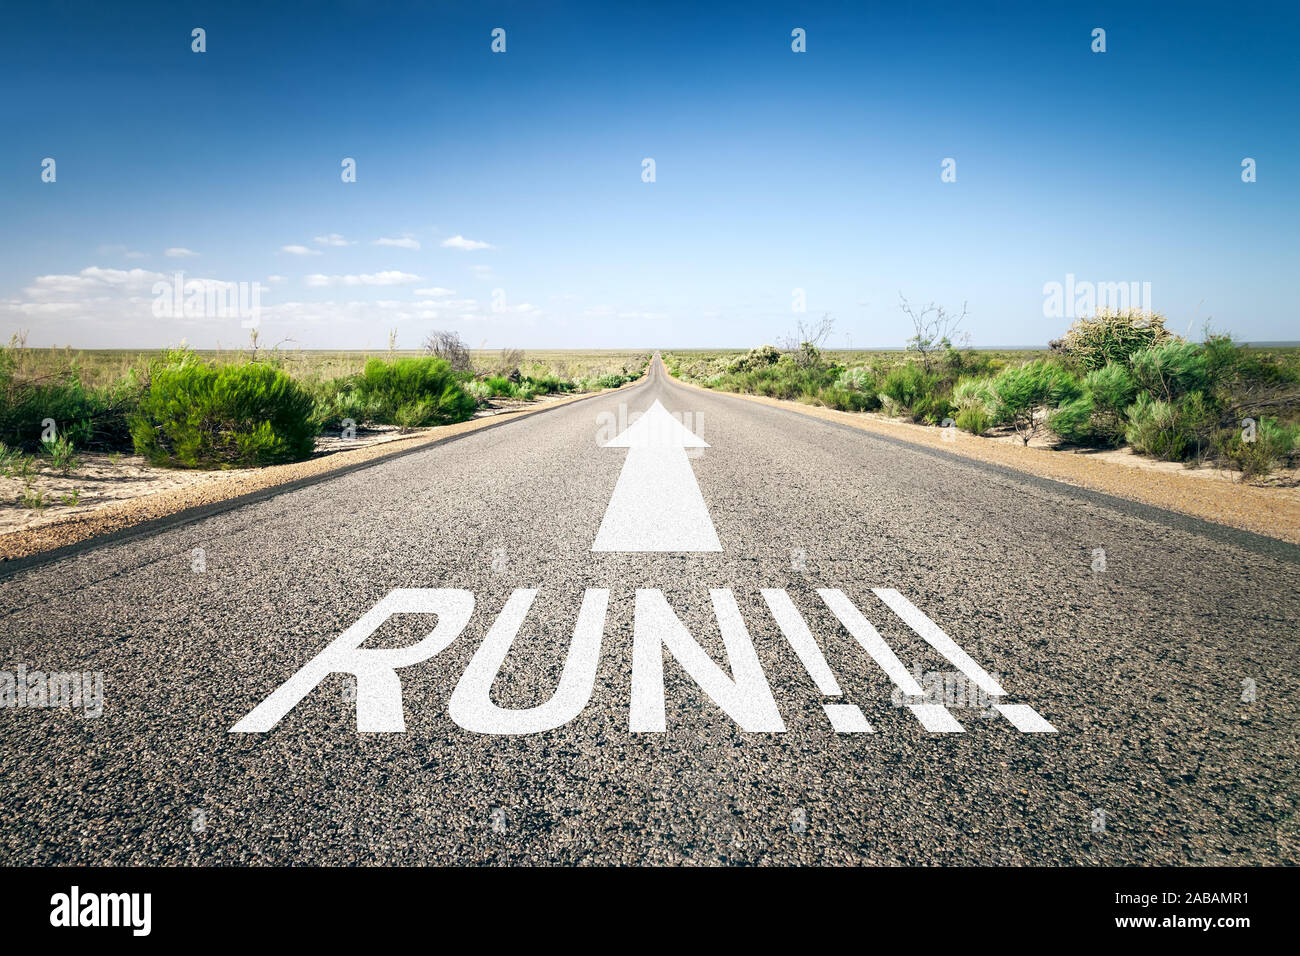 Eine unendlich lange Strasse mit der wegweisenden Aufschrift: 'Run!' Stock Photo